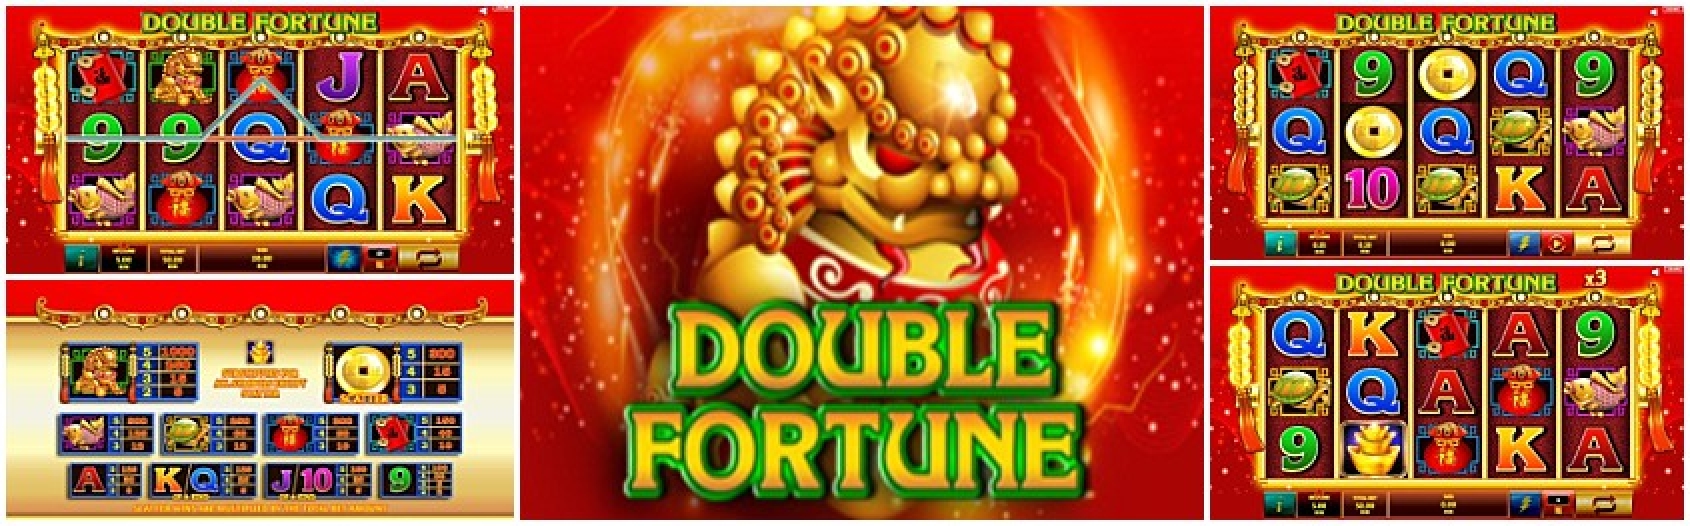 Double Fortune demo